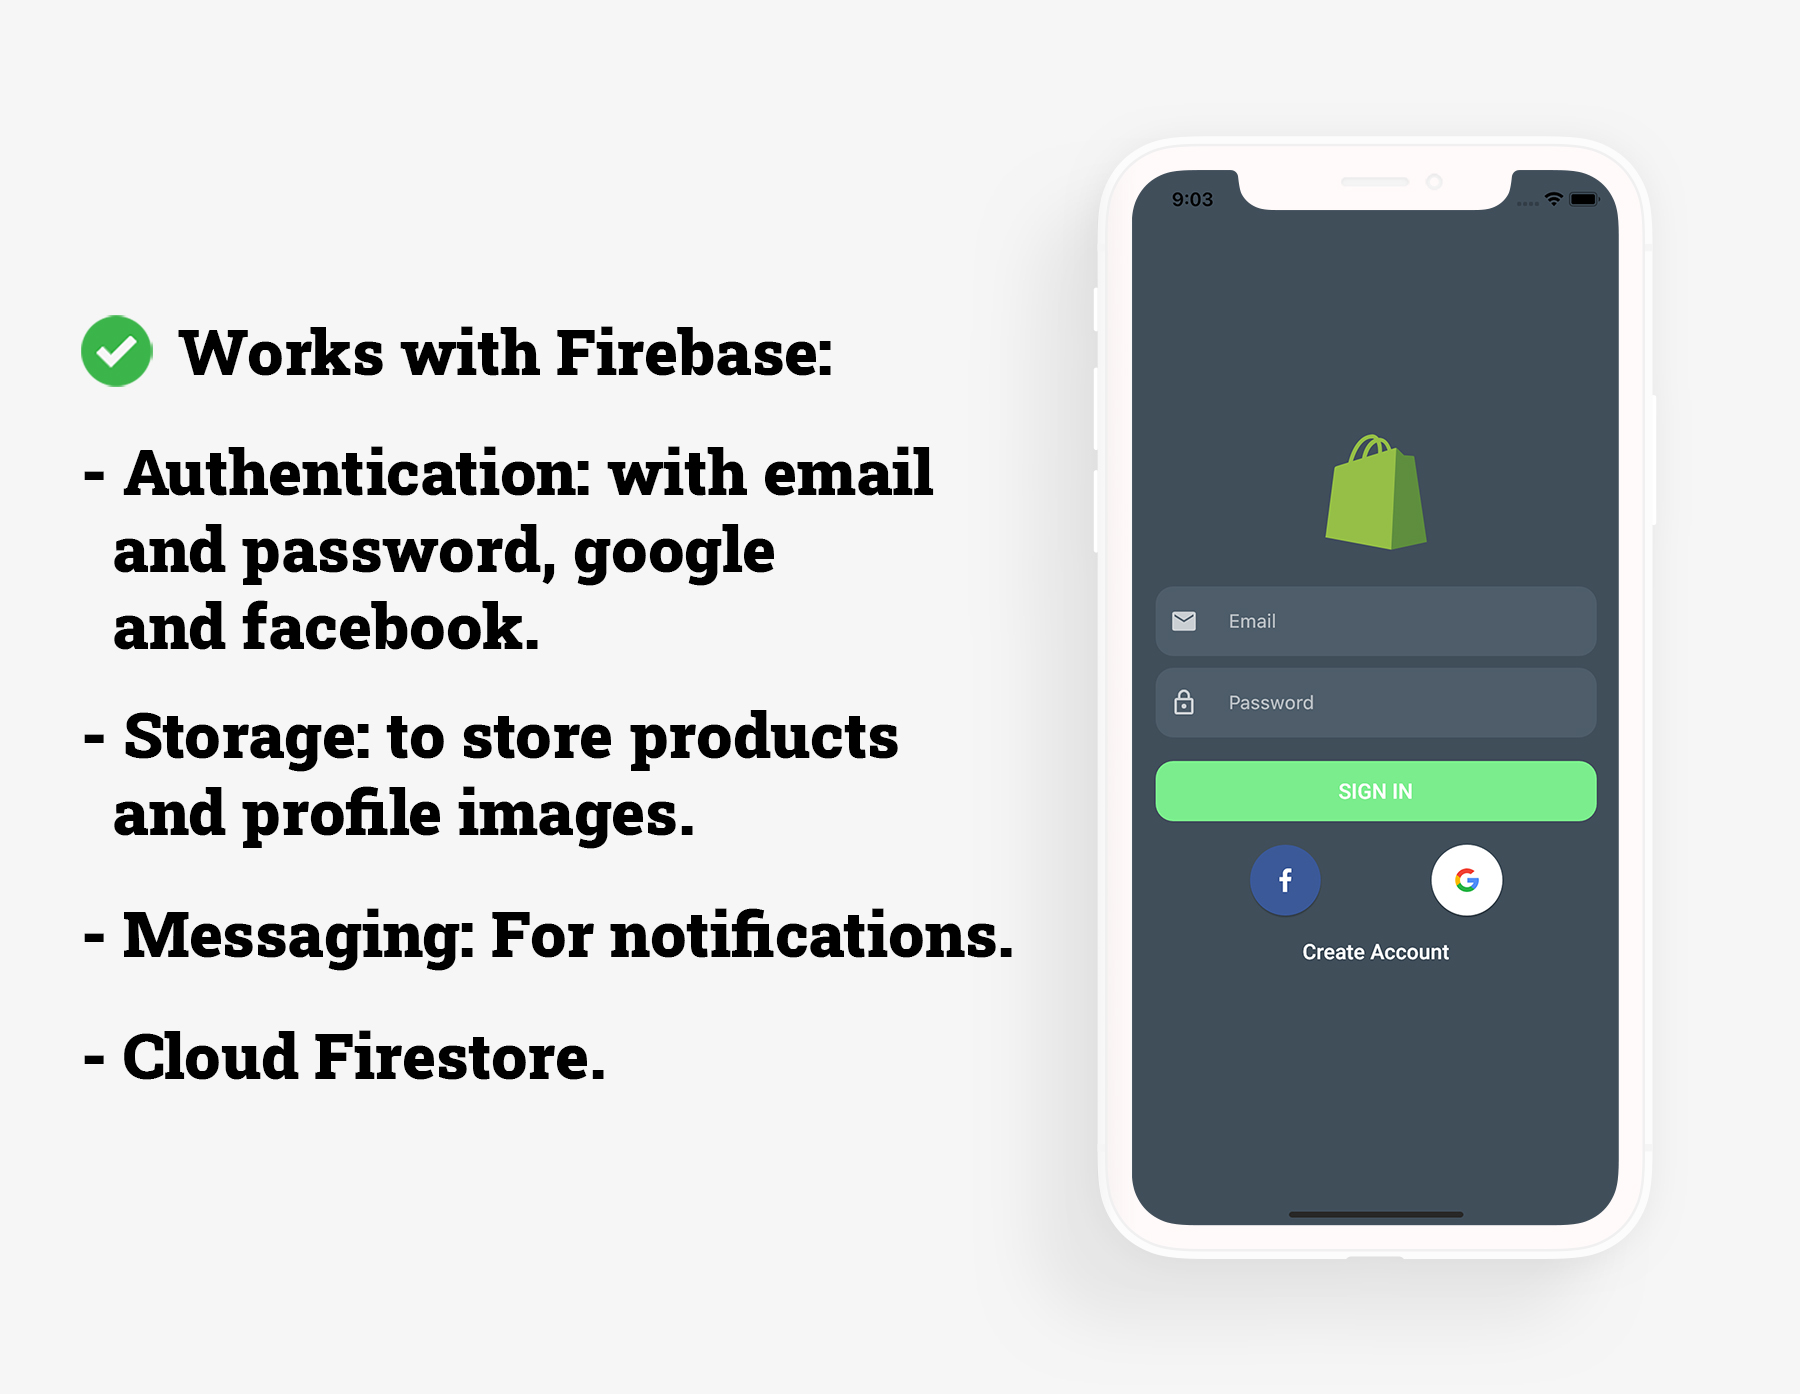 Flutter Grocery: Full Android + iOS eCommerce App - Script Advisors